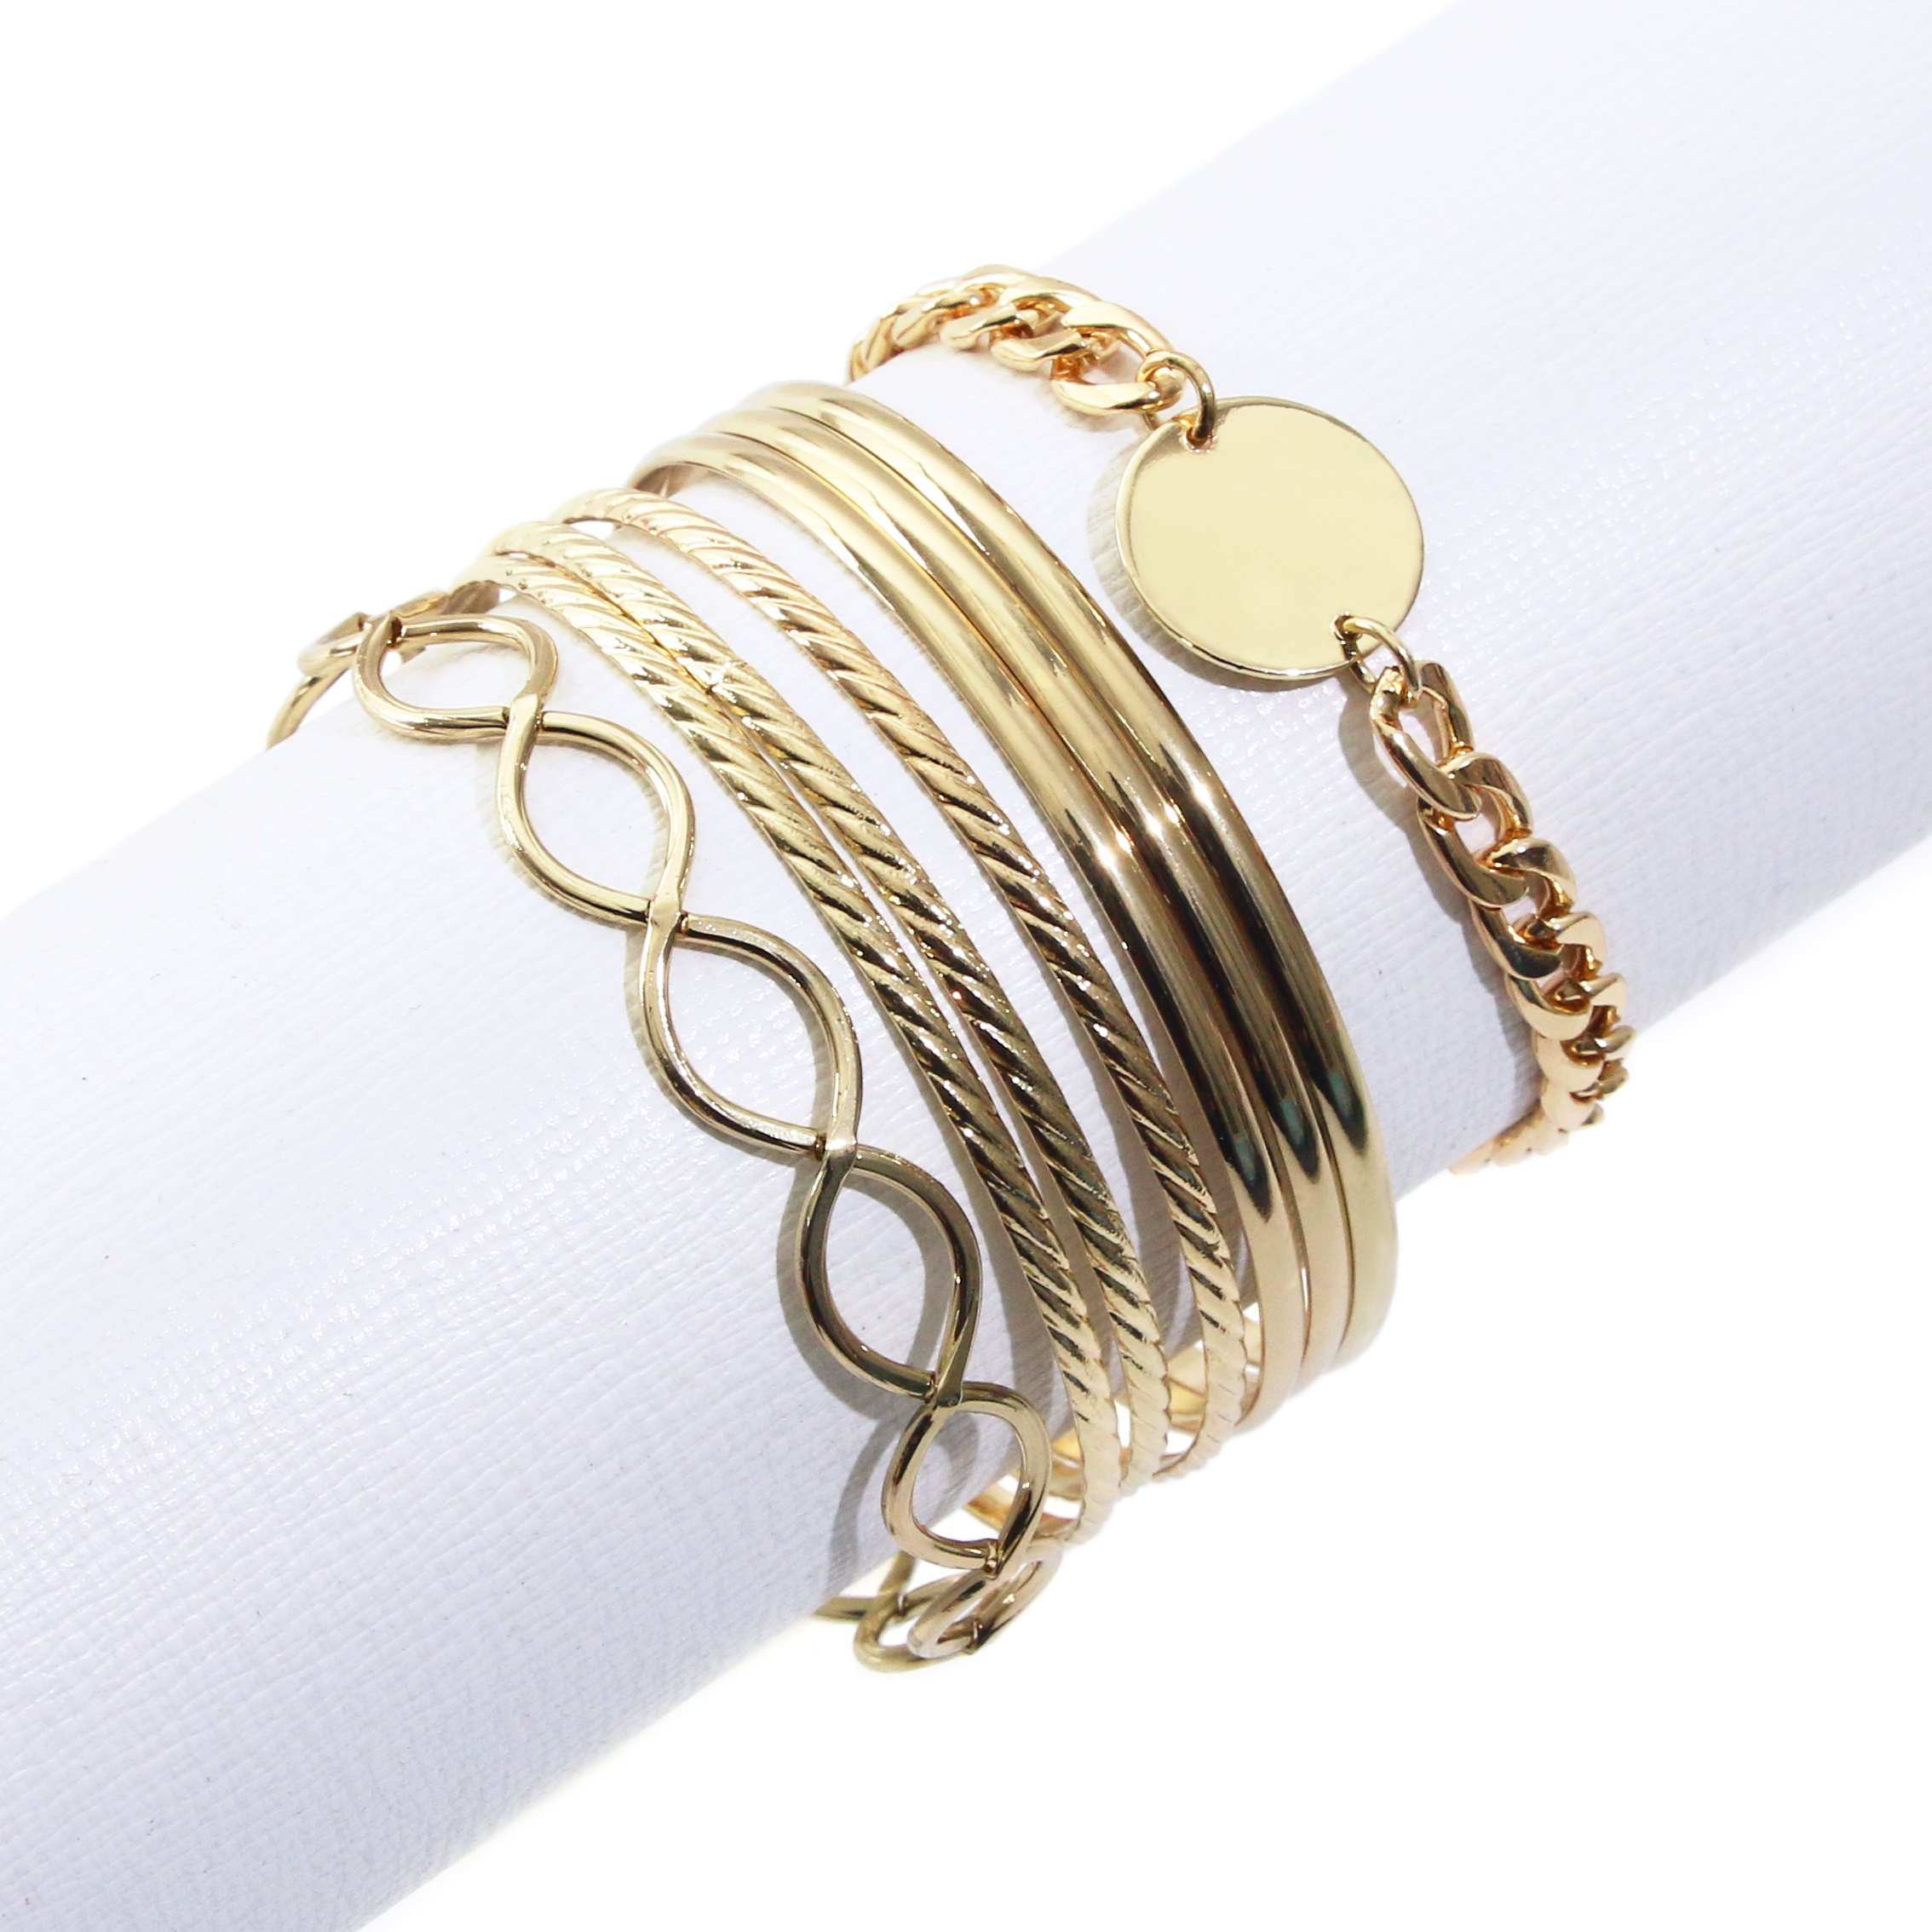 gold metal bangles bracelets set